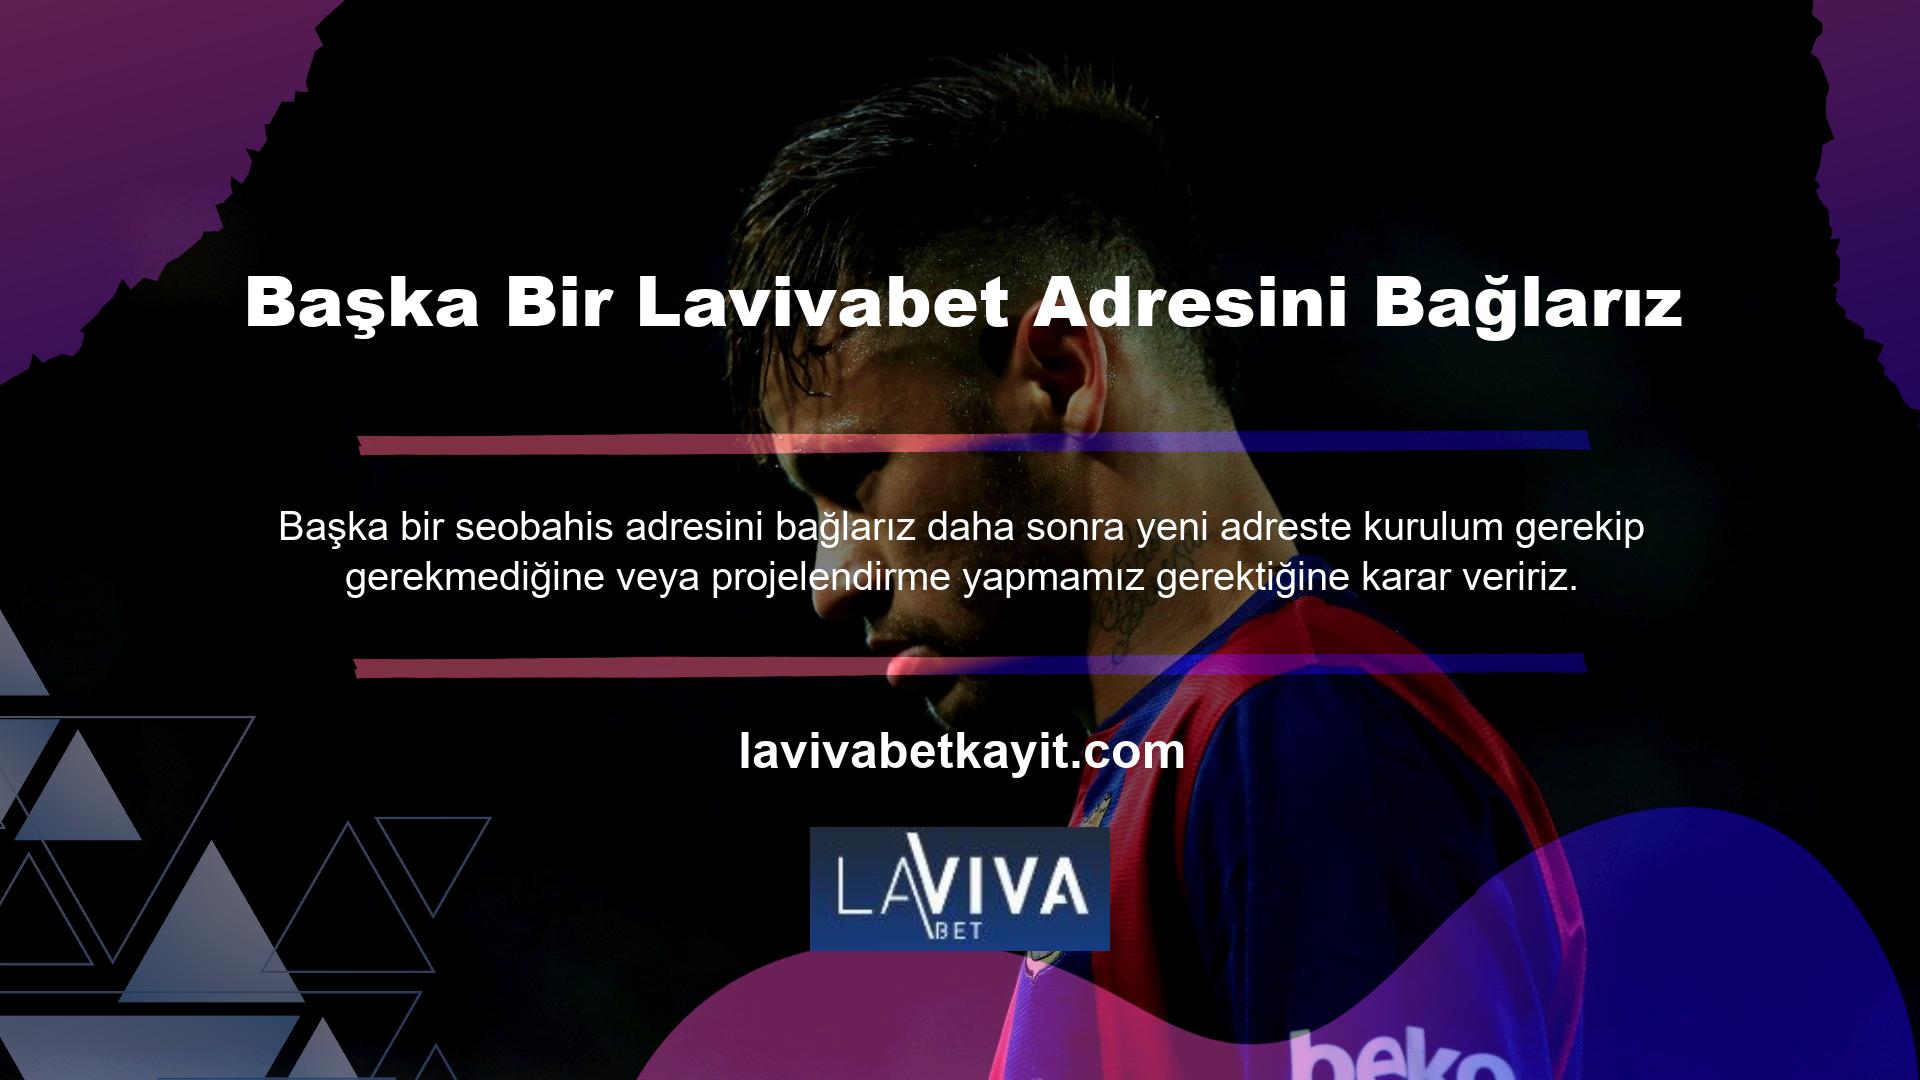 Yeni bir adres oluşturmak veya bağlanmak için oturum açmayı gerektirmeyen tek web sitesi Lavivabet